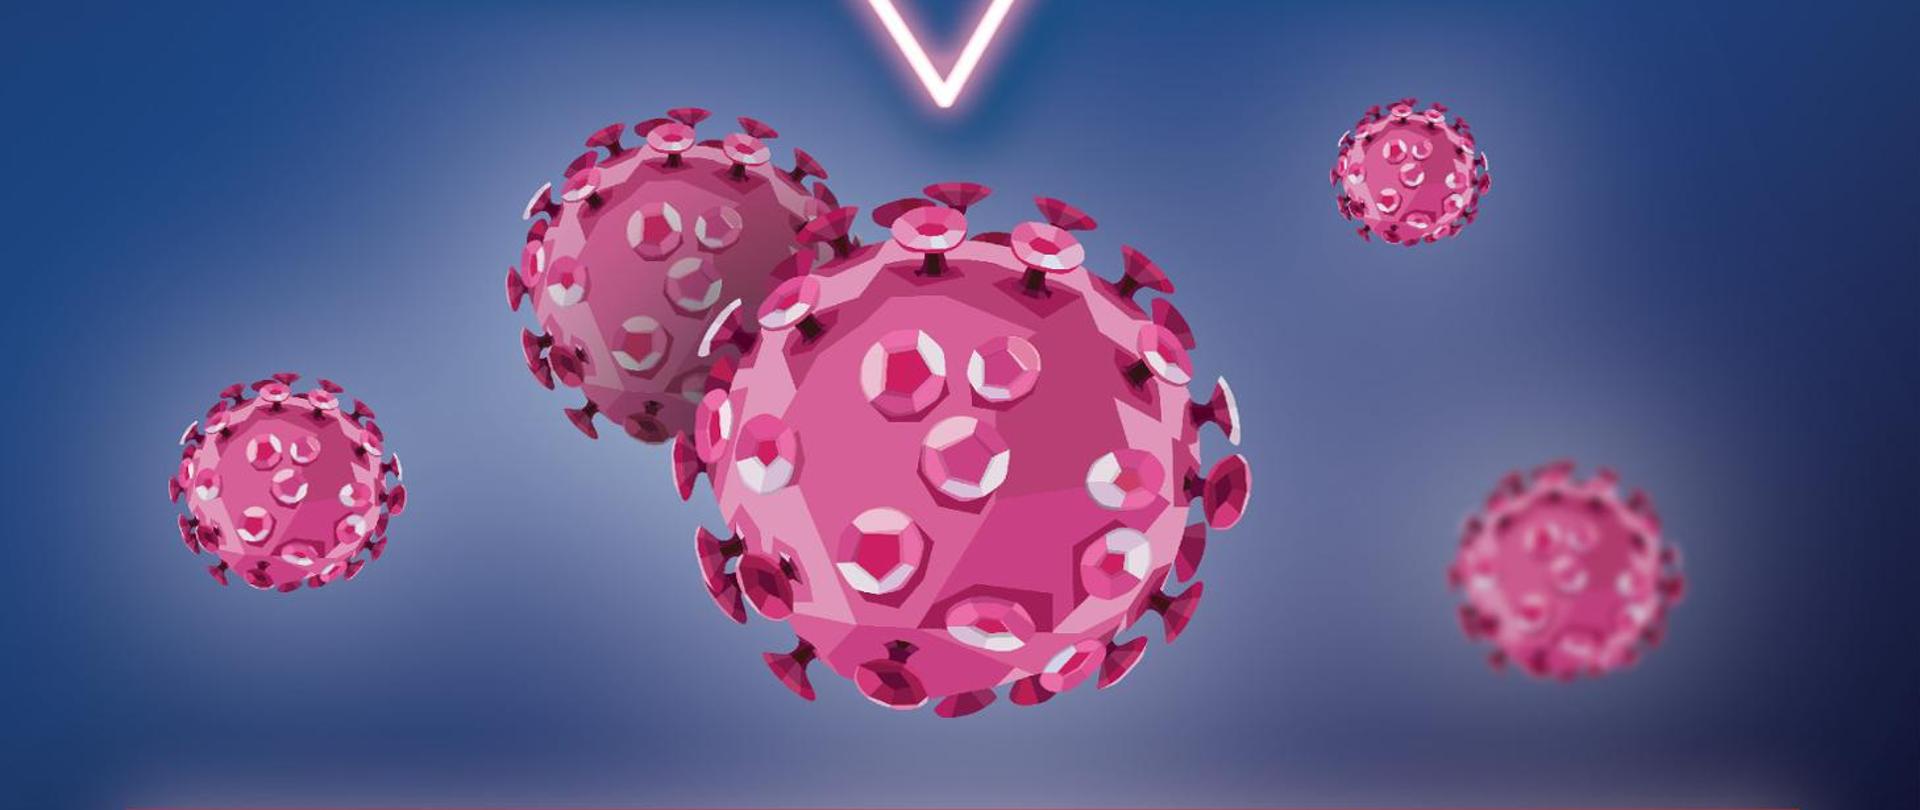 Baner prostokątny z ciemnoniebieskim tłem rozjaśnianym w niektórych miejscach. Na rysunku znajduje się 5 uproszczonych obrazków przedstawiających wirusy pod mikroskopem elektornowym. Wszystkie wirusy są w odcieniach koloru różowego.